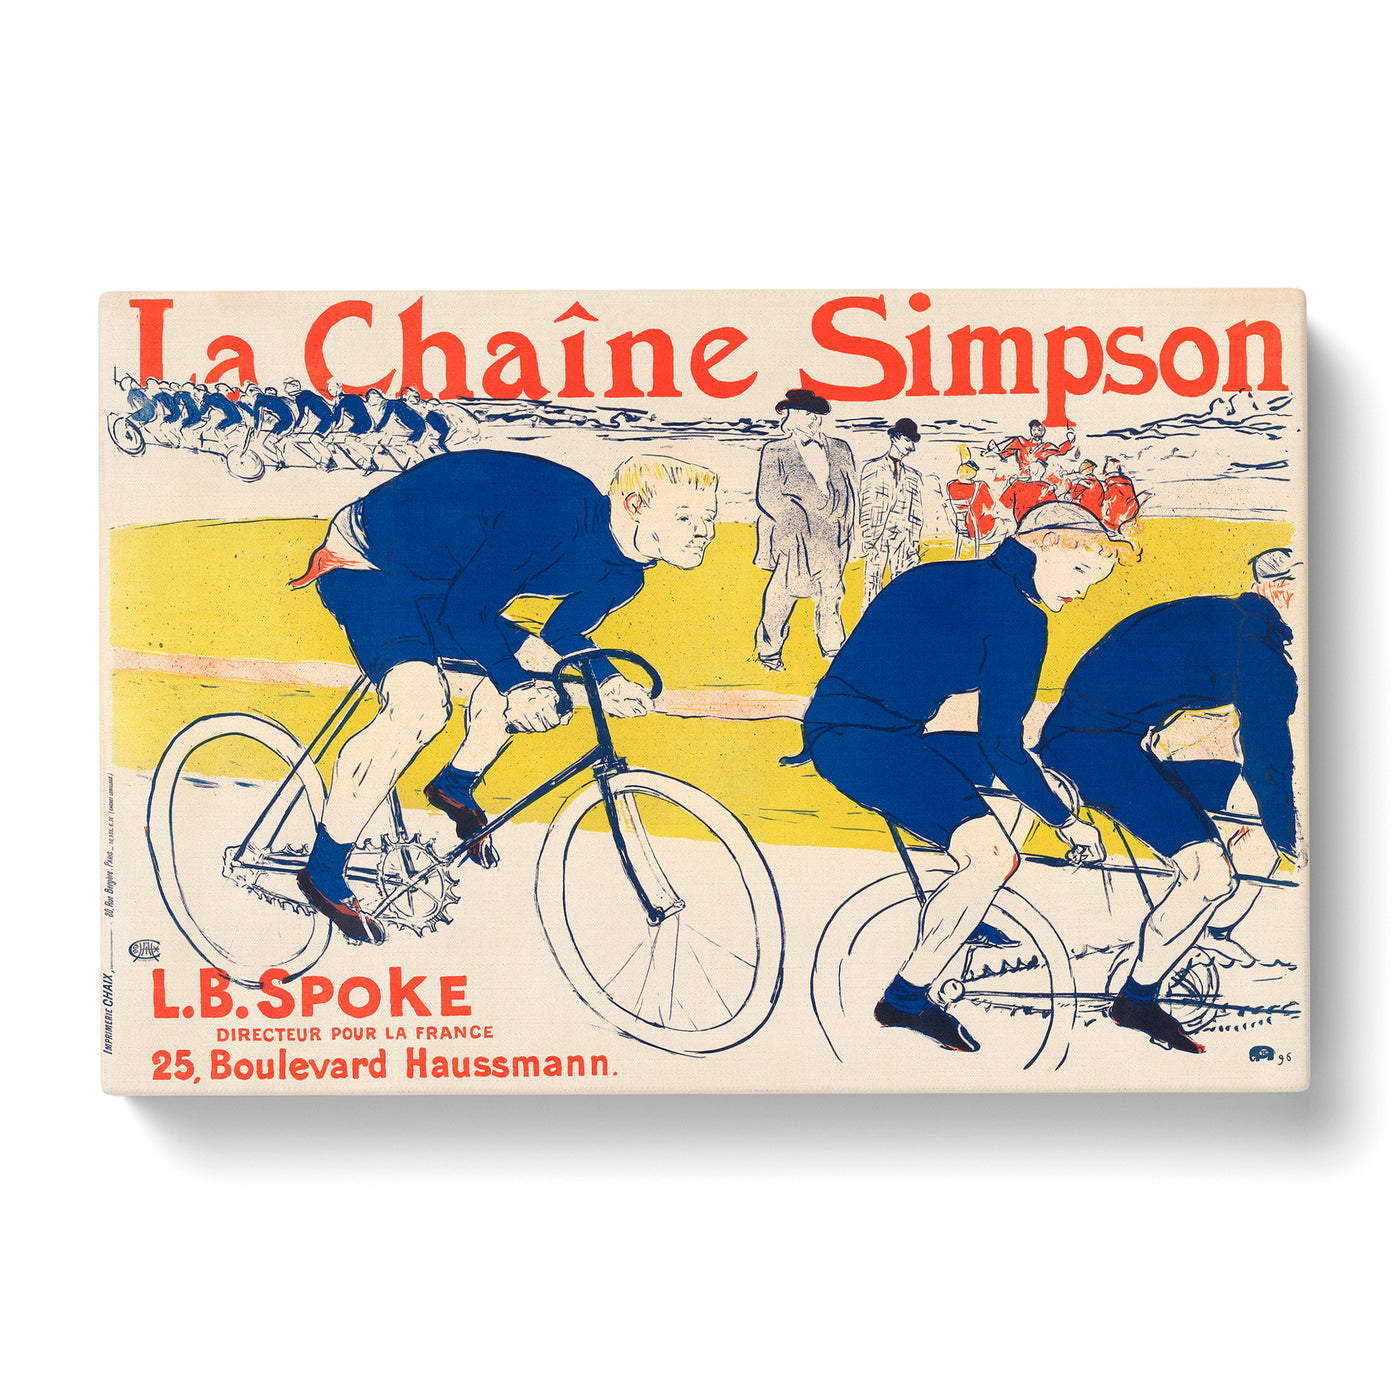 The Simpson Chain Byx Henri De Toulouse Lautreccan Canvas Print Main Image